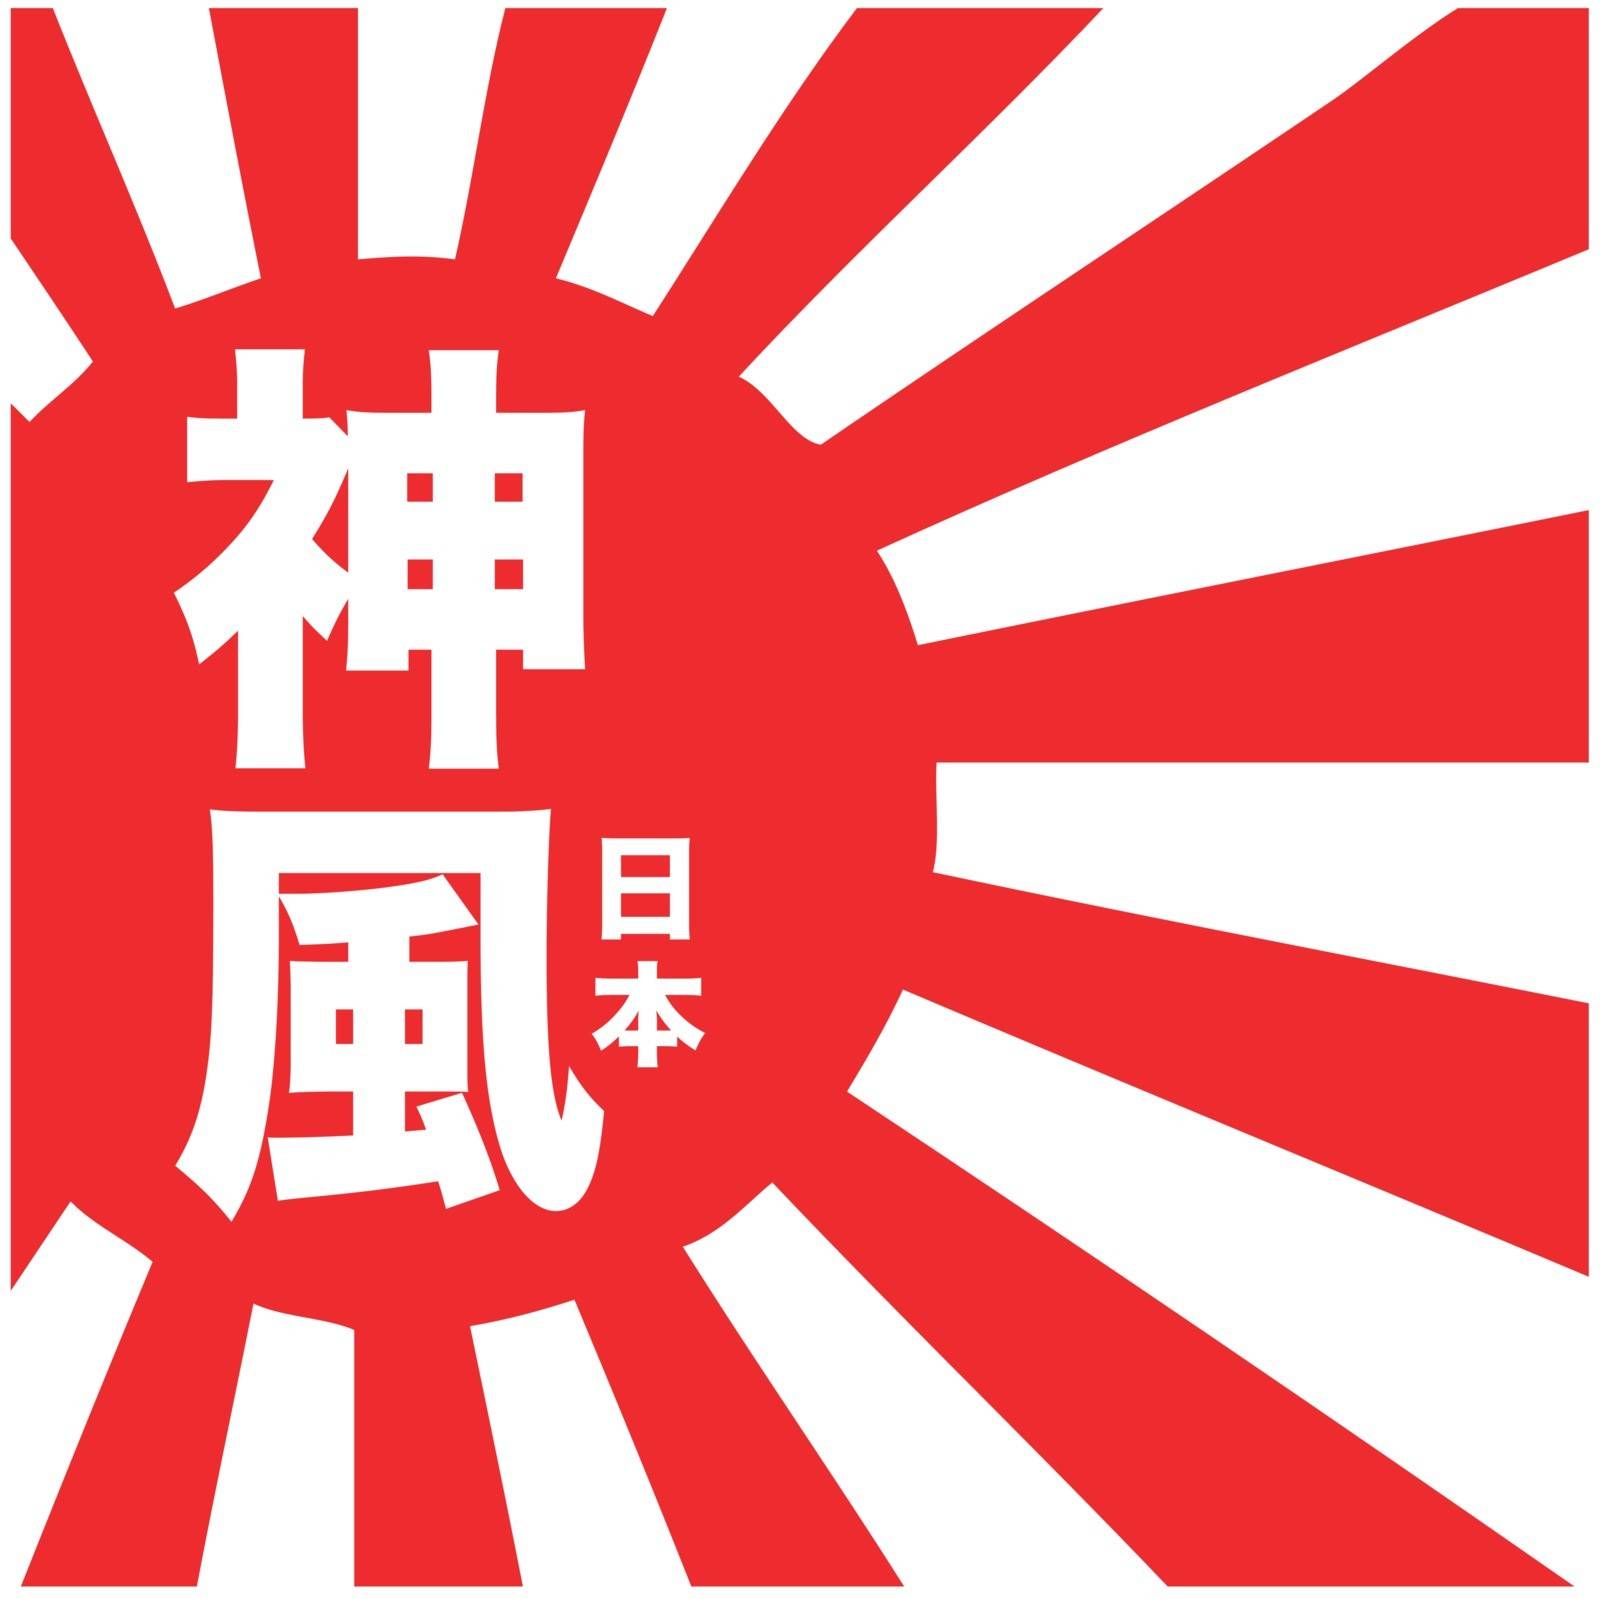 vector flag of kamikaze